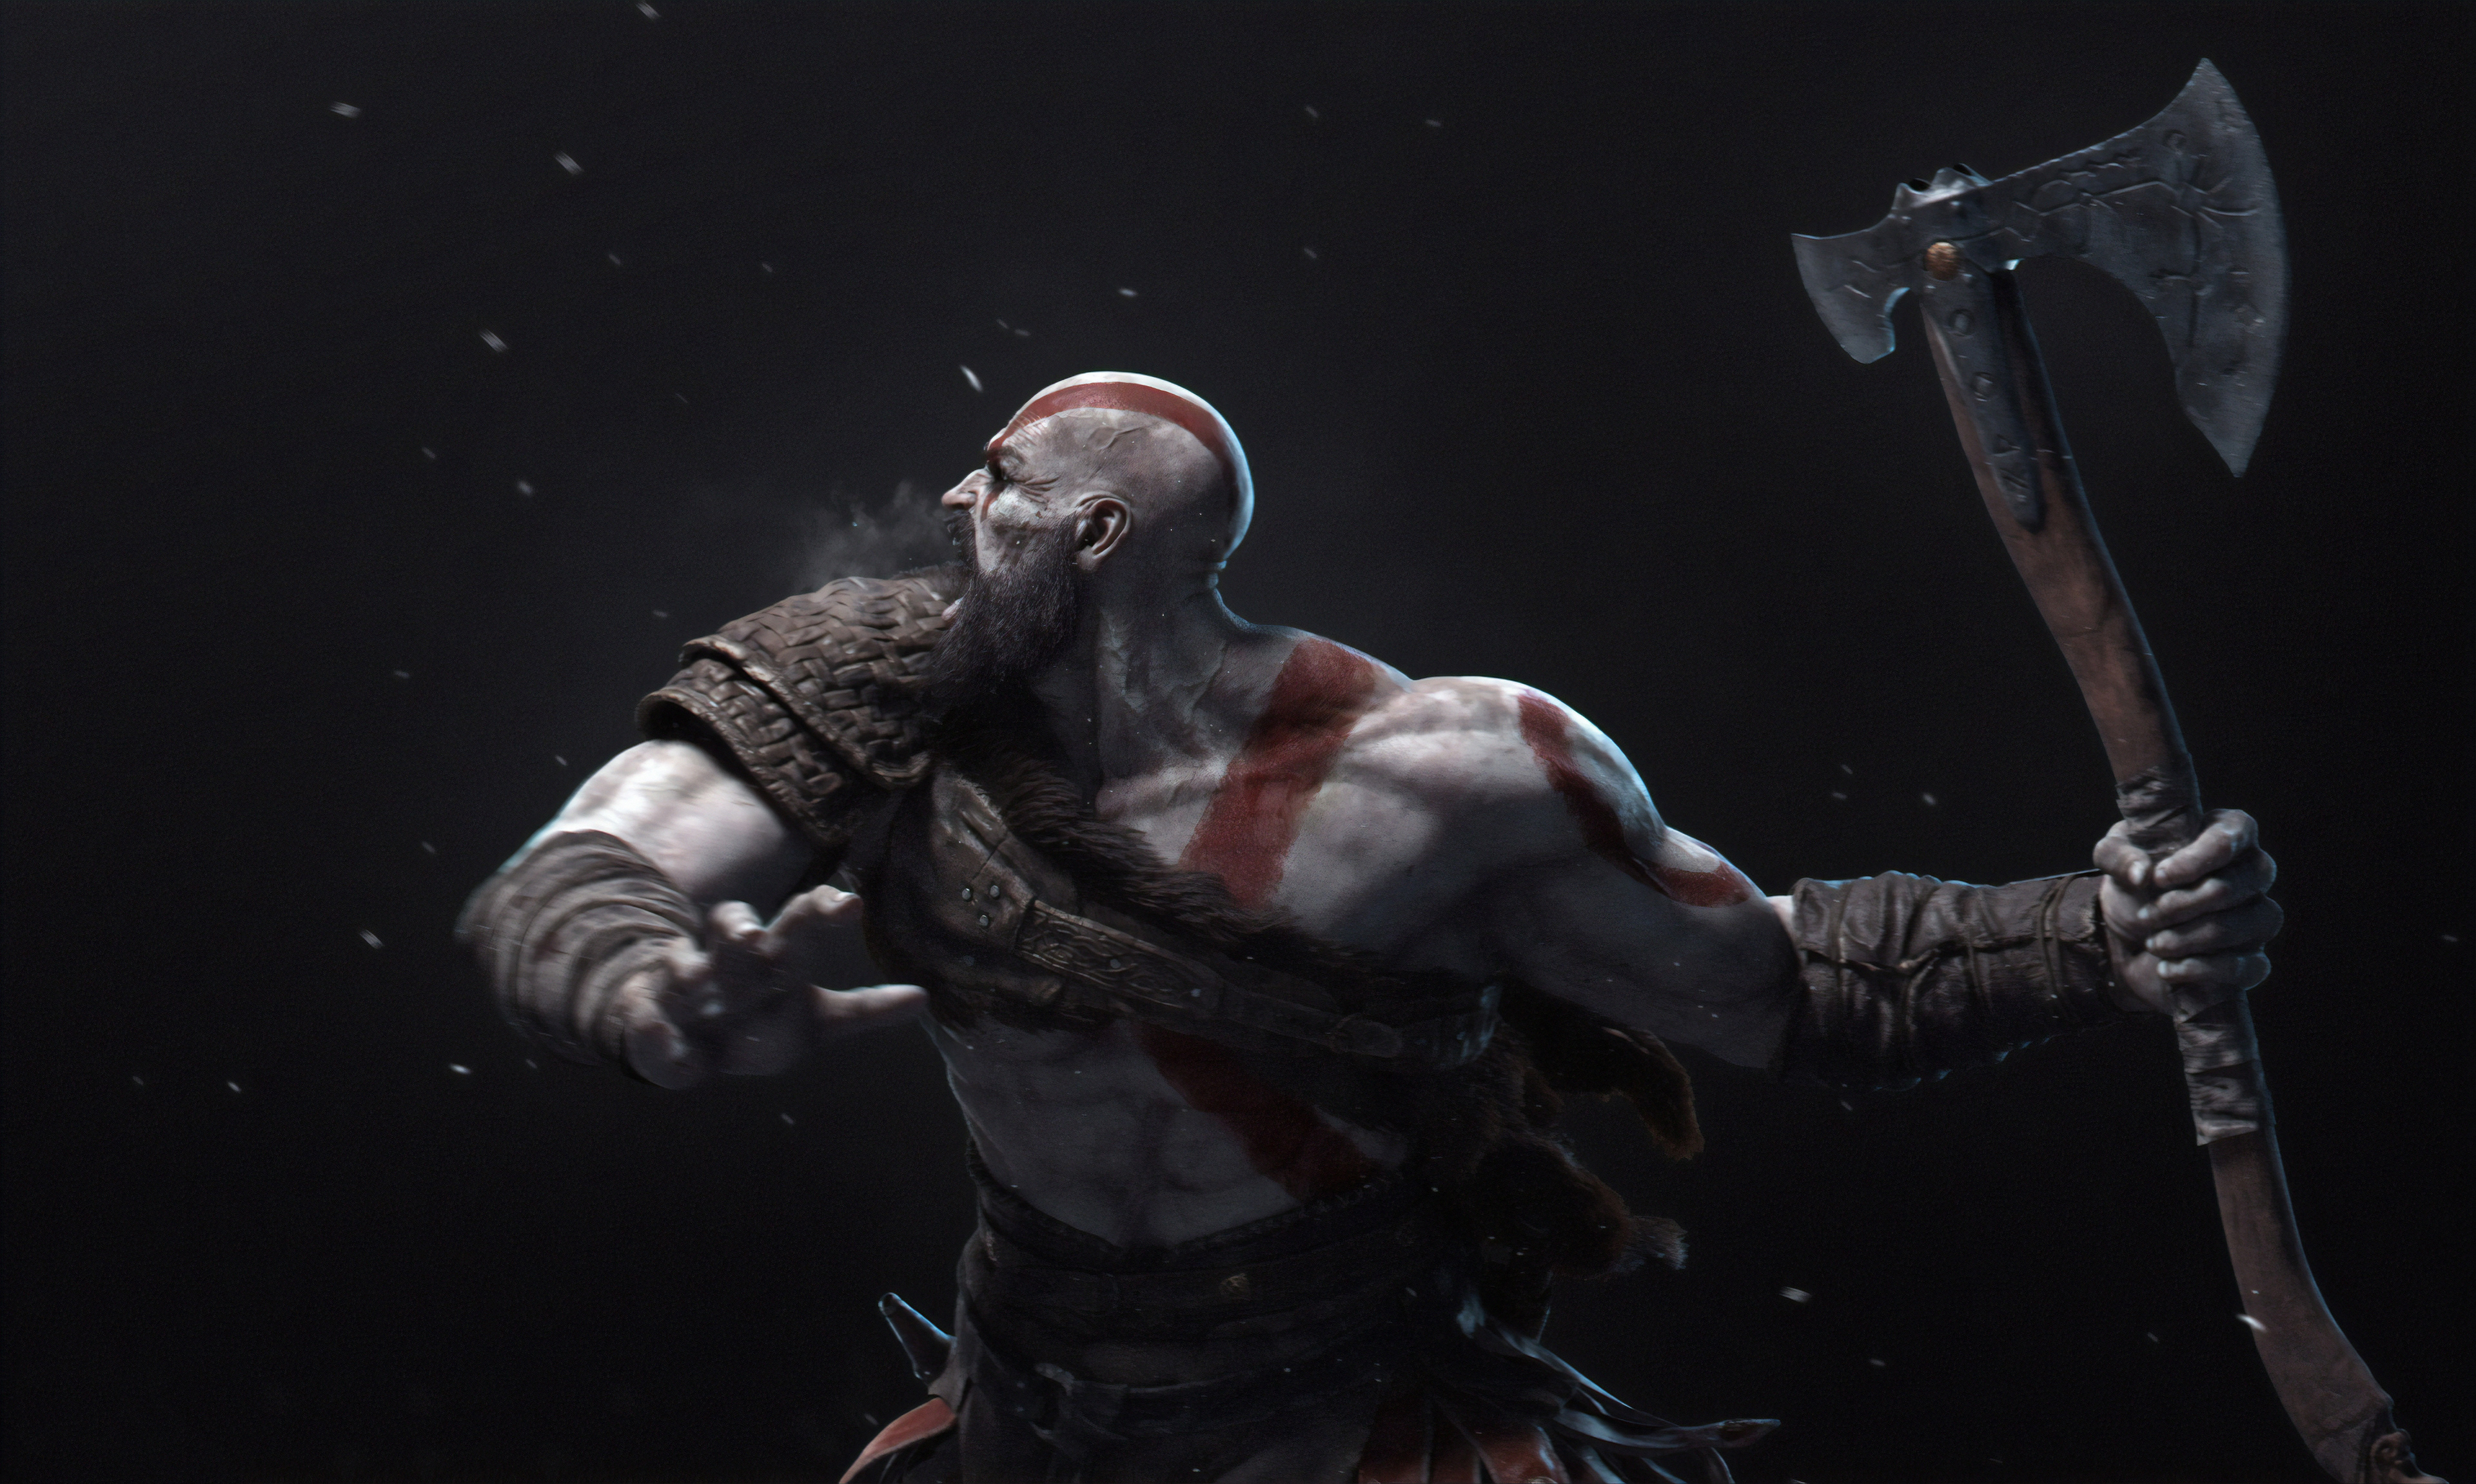 kratos (god of war), god of war, video game, axe, warrior Desktop home screen Wallpaper